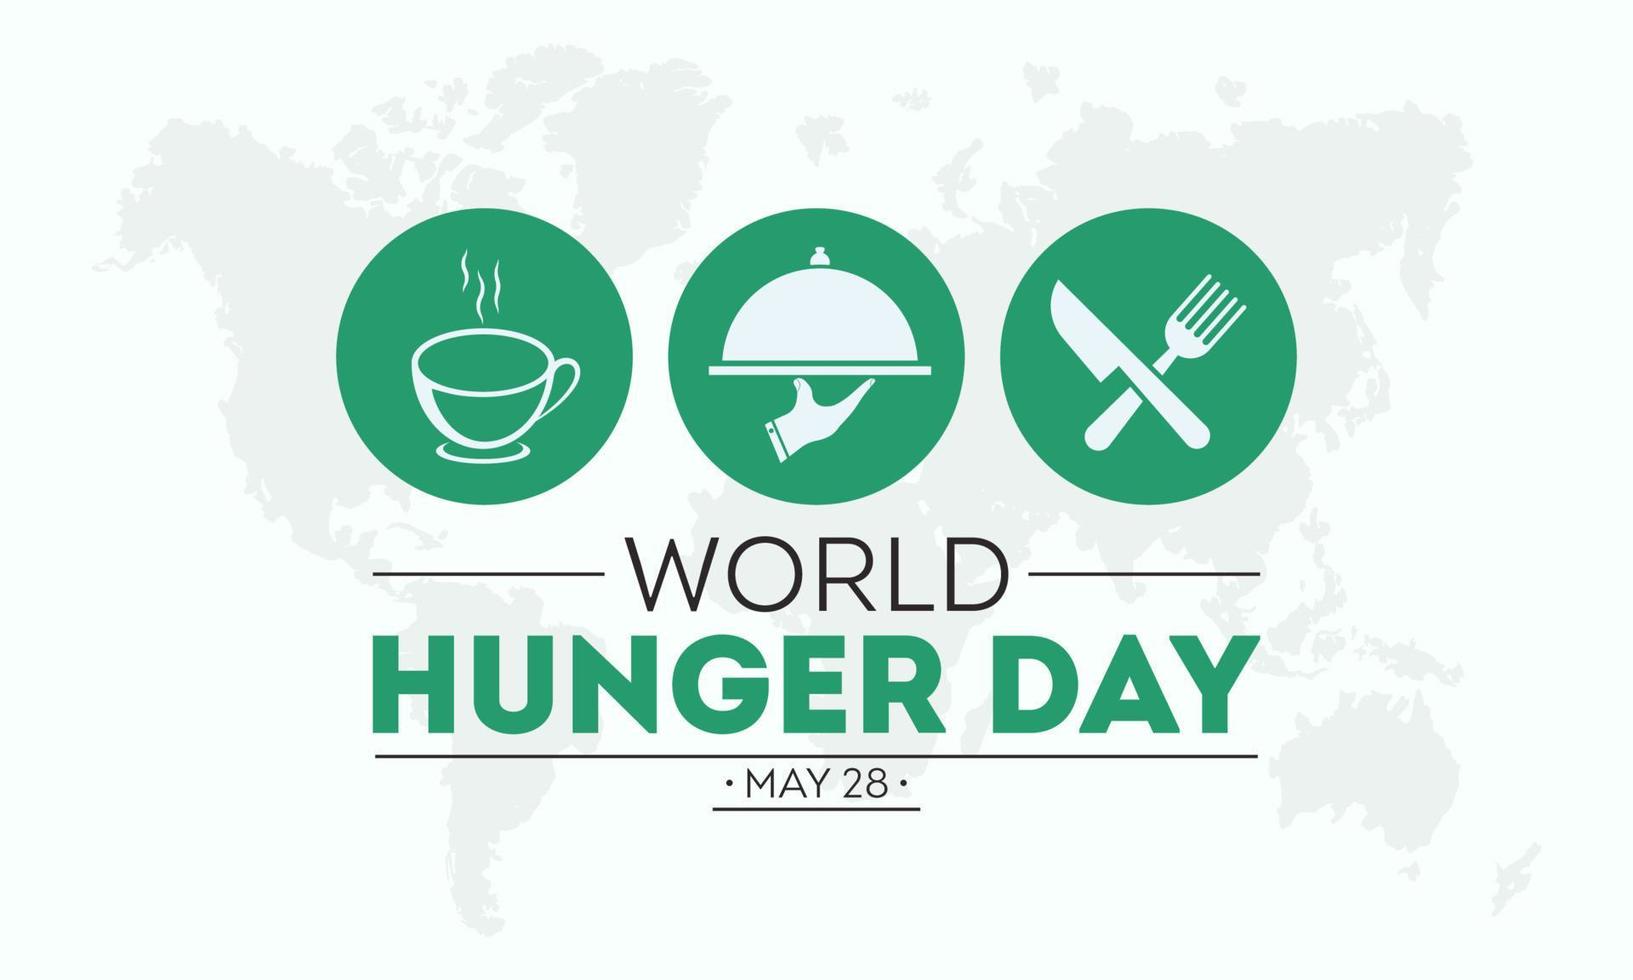 värld hunger dag är observerats varje år på 28: e Maj. vektor illustration på de tema av värld hunger dag mat förebyggande och medvetenhet vektor begrepp.